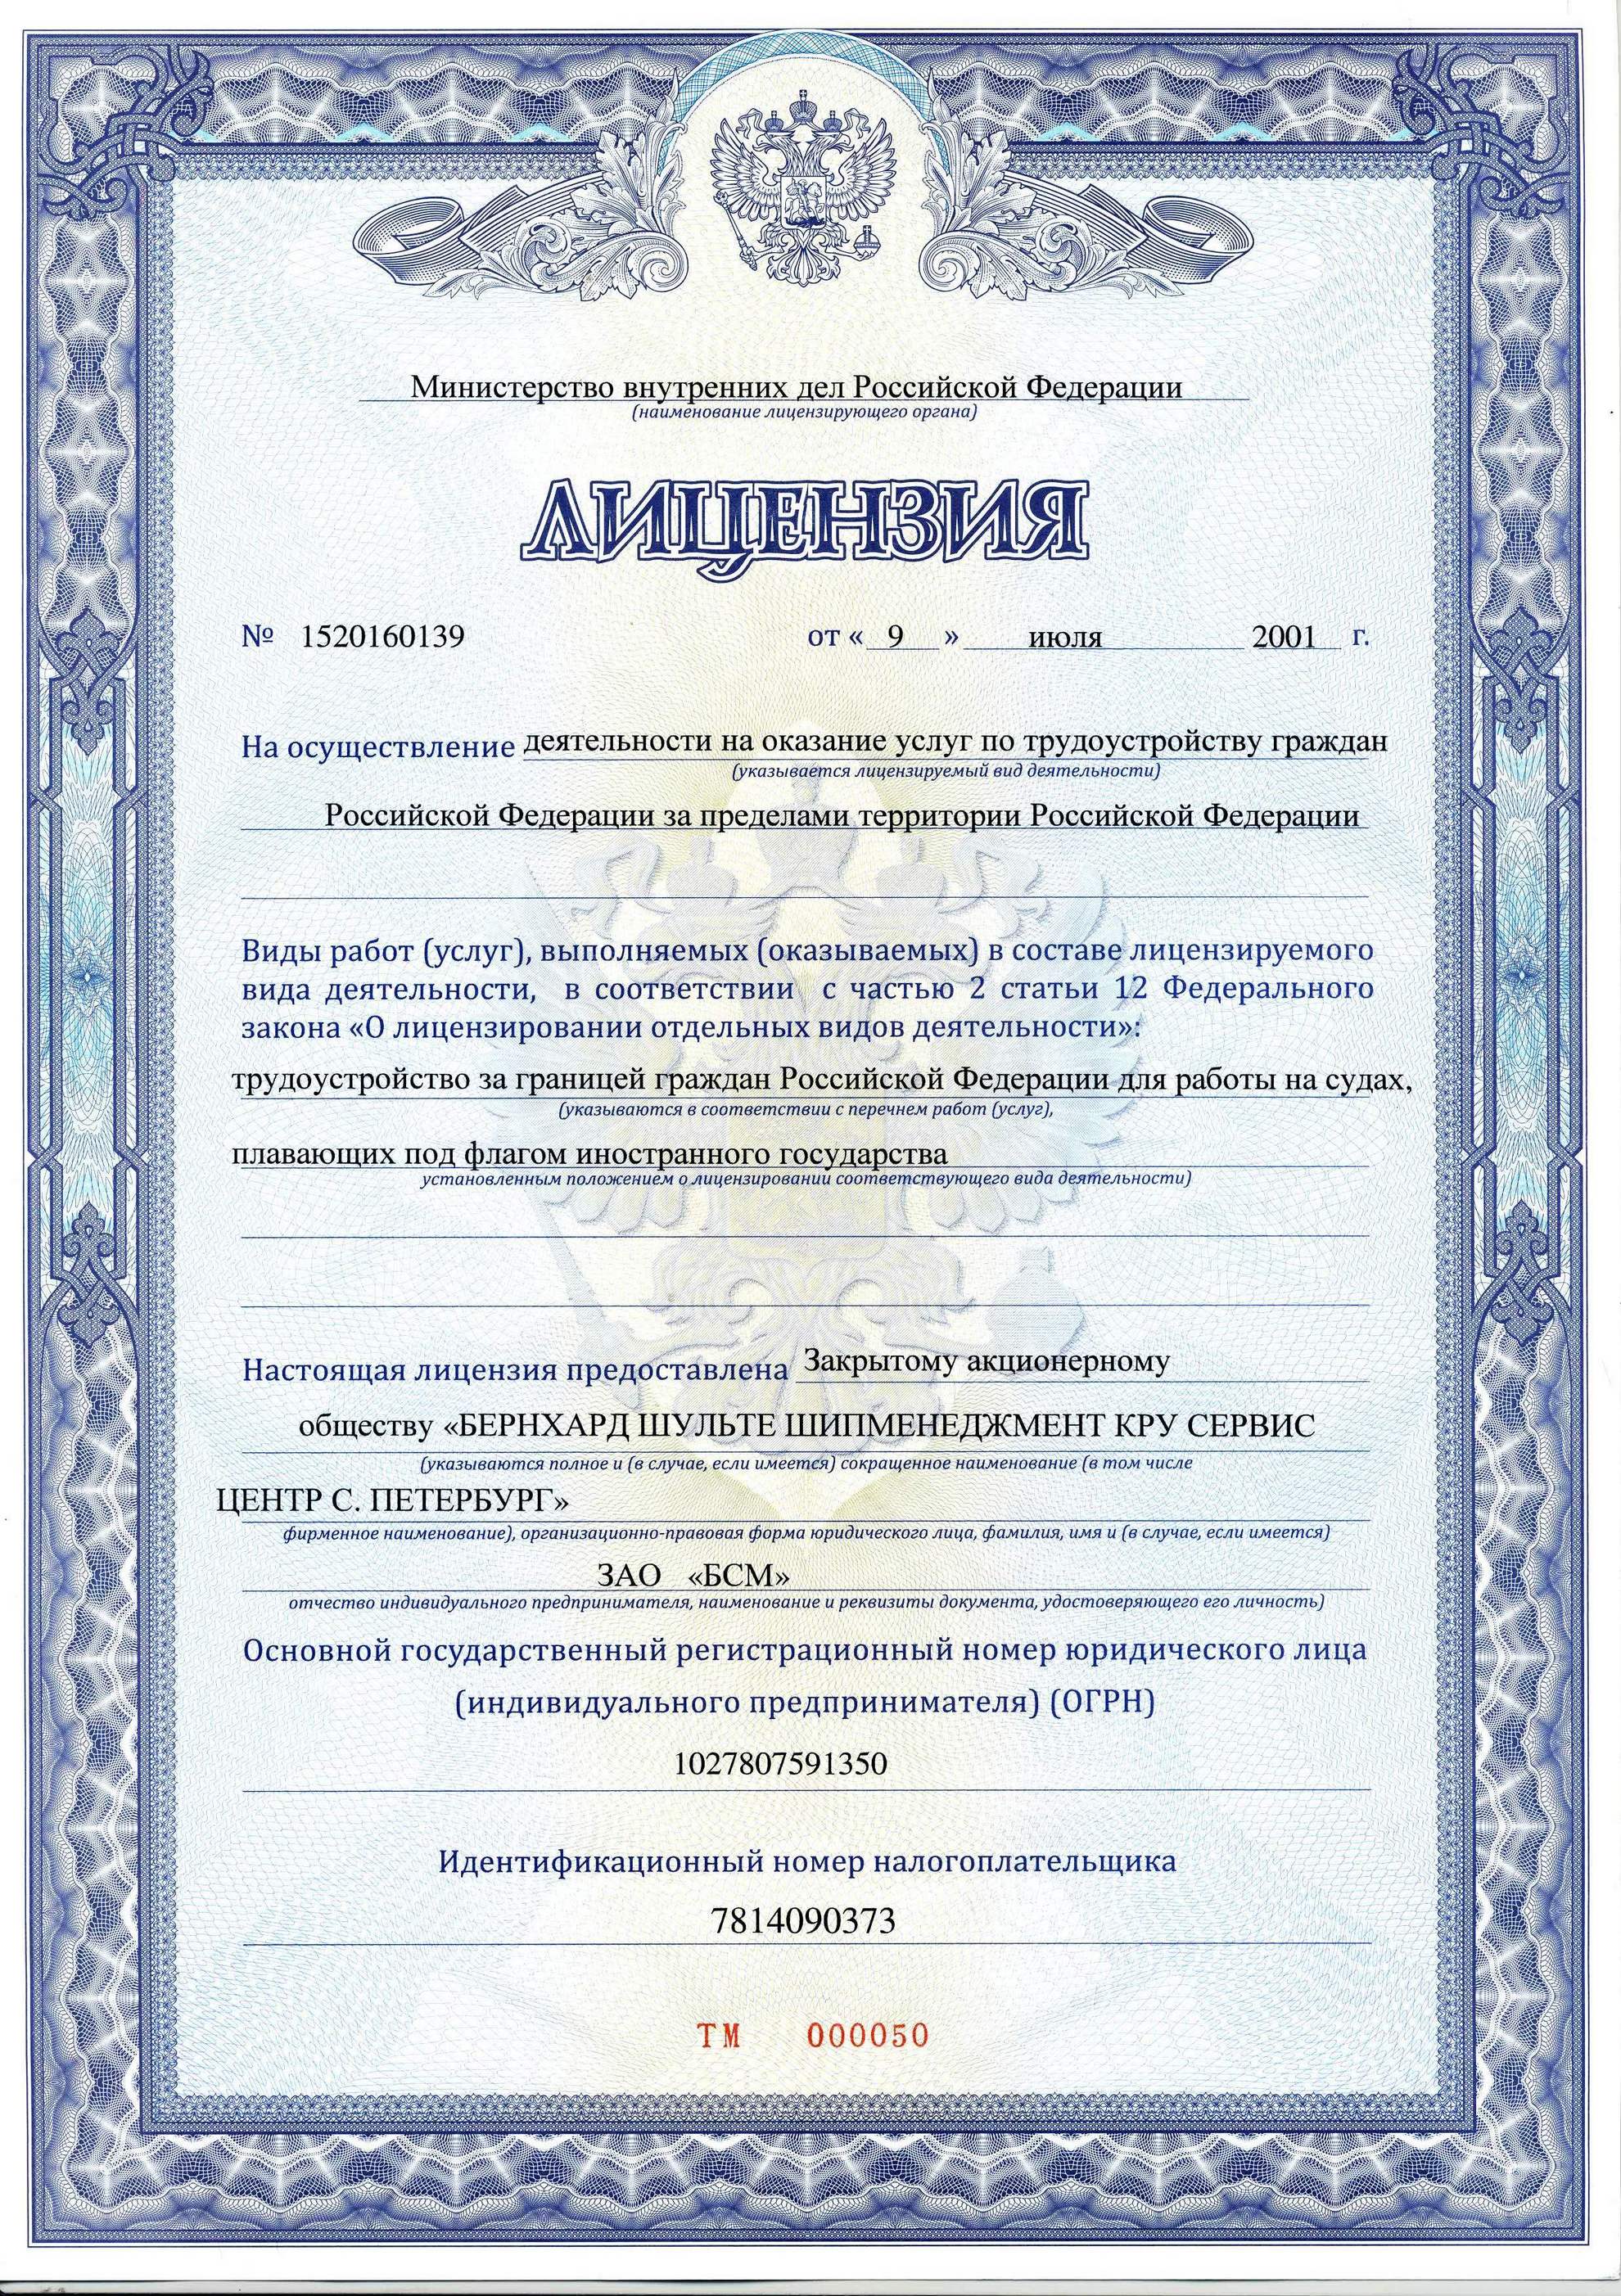 BSM - Лицензии и сертификаты